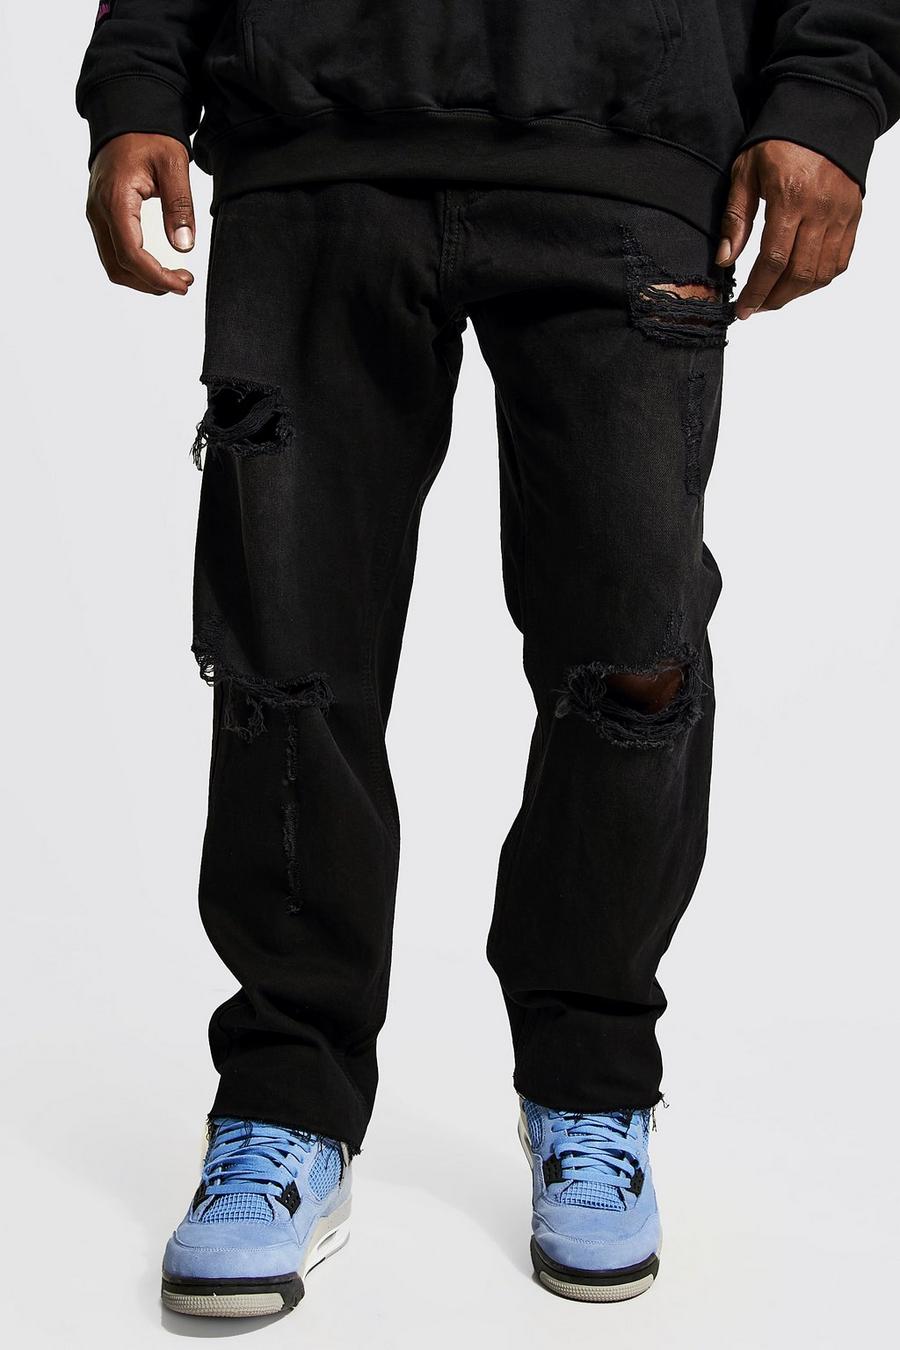 שחור דהוי ג'ינס ripped בגזרה צרה עם קרעים במכפלת, מידות גדולות image number 1